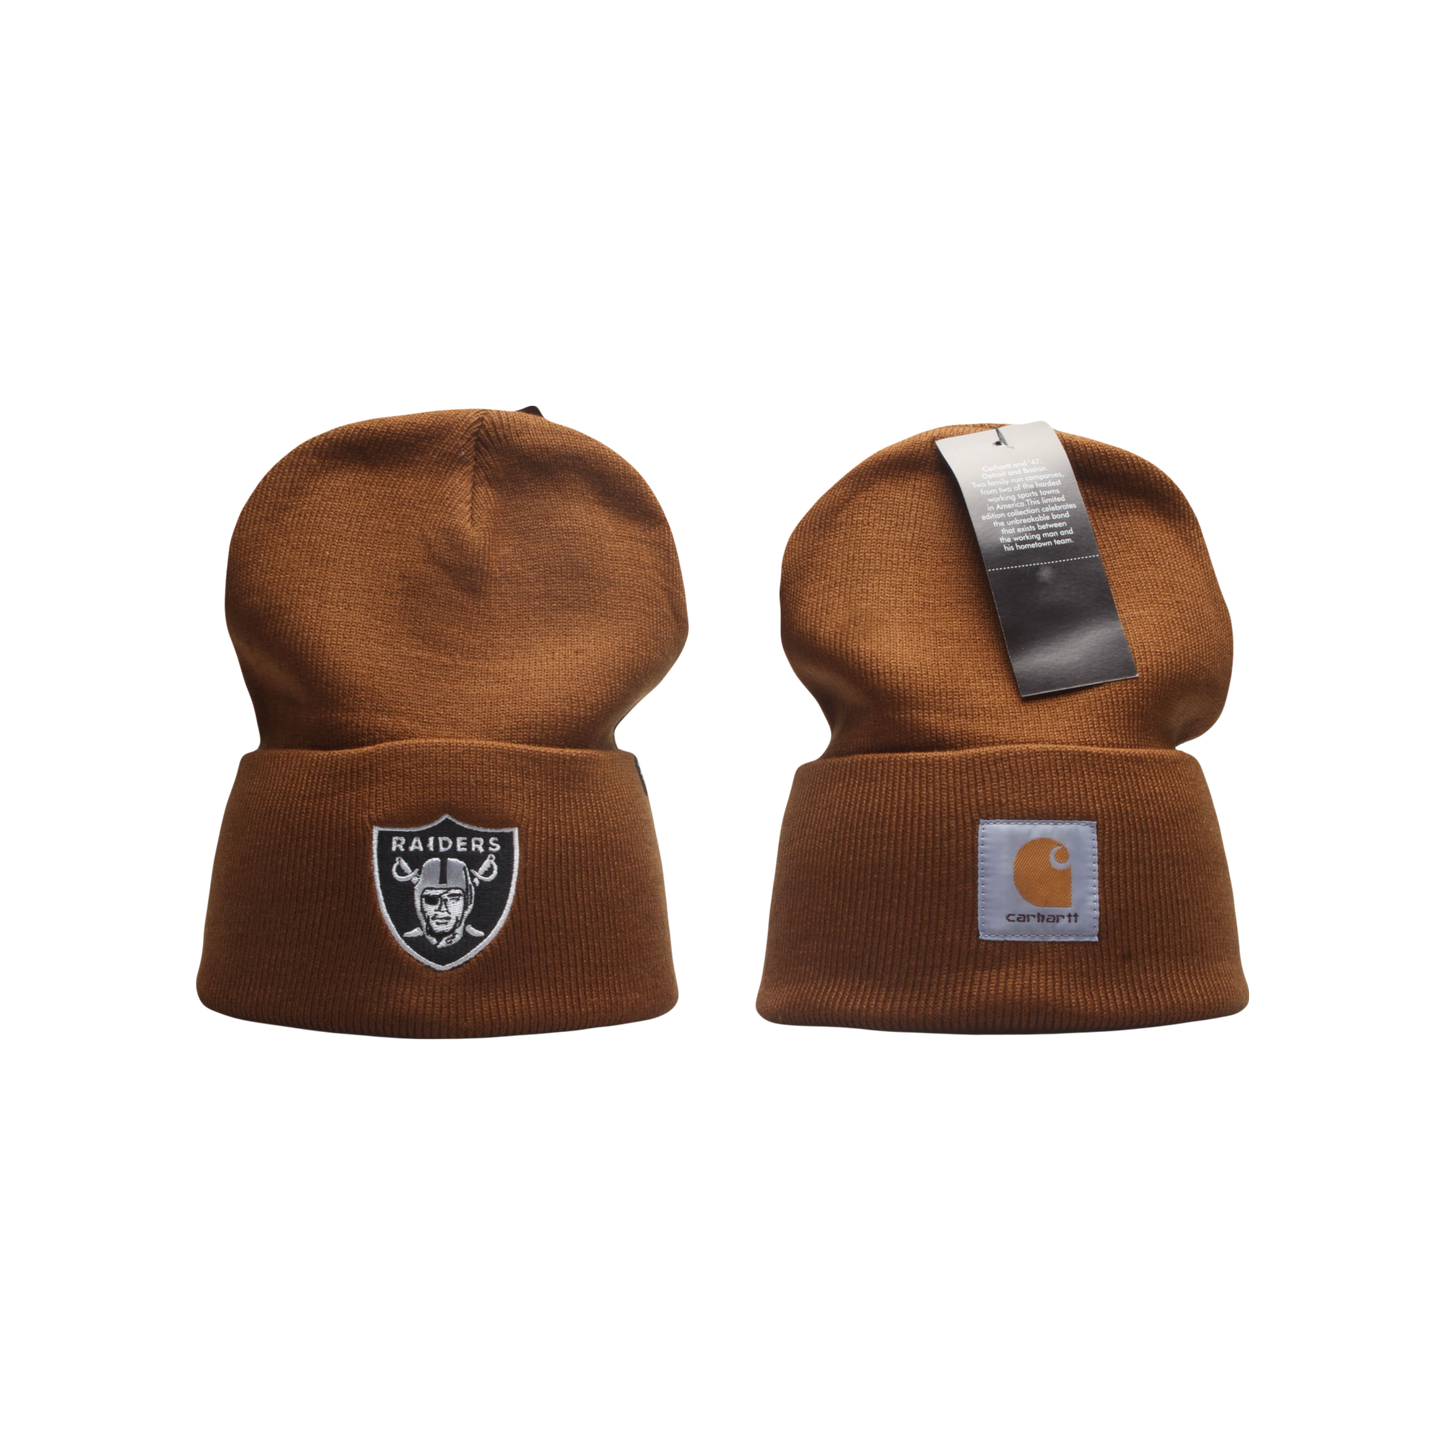 Carhartt x 47’ NFL Las Vegas ‘Oakland’ Raiders Knit Hat